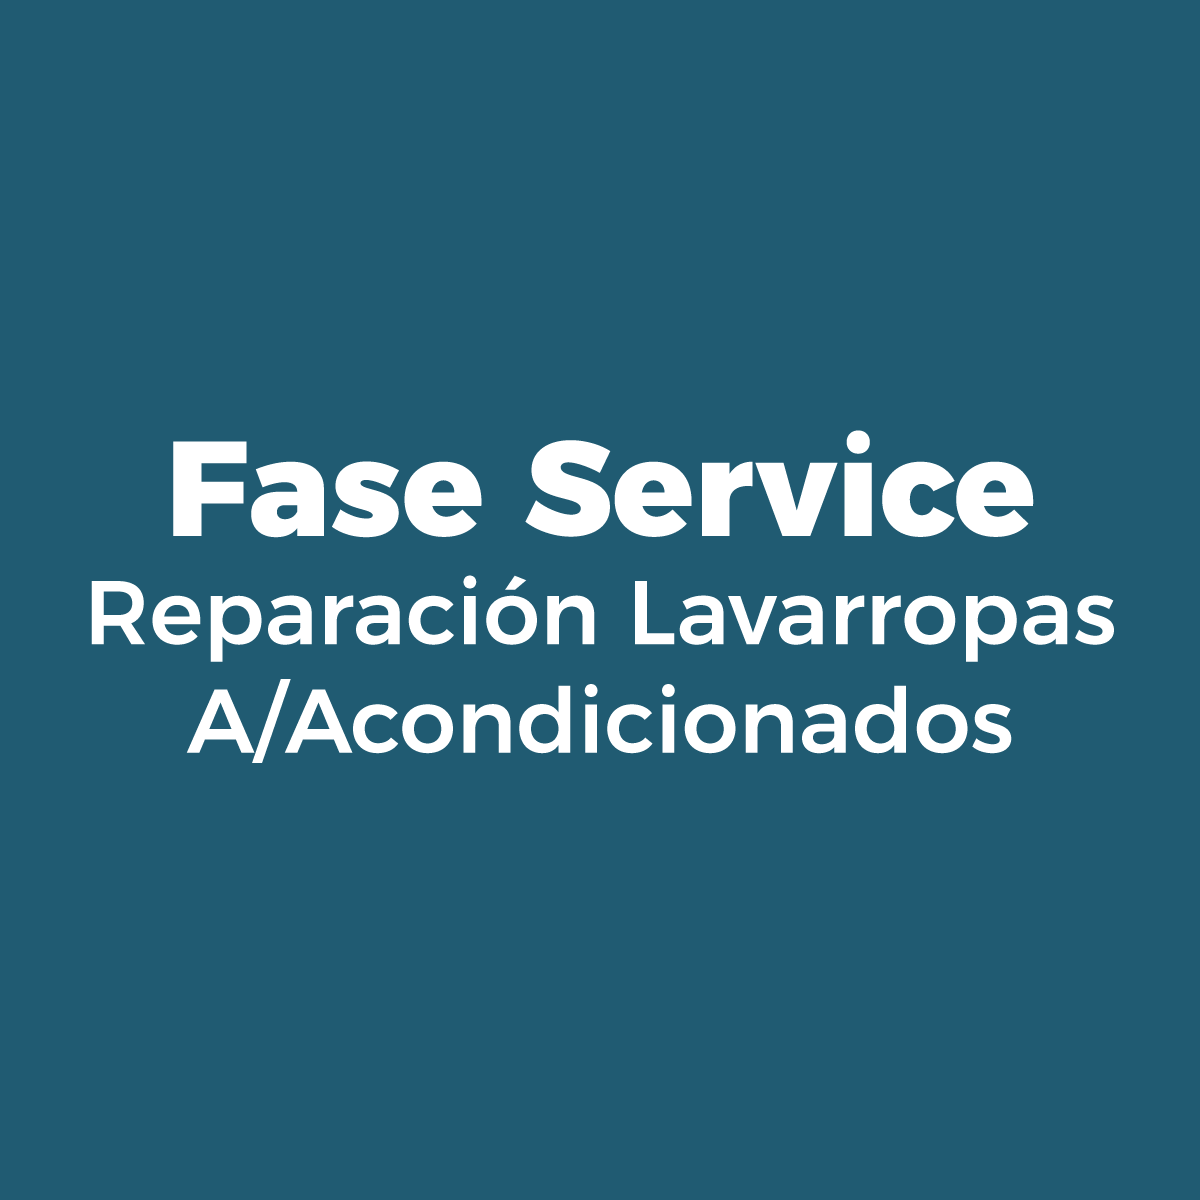 FASE SERVICE - REPARACION LAVARROPAS - A/ACONDICIONADOS